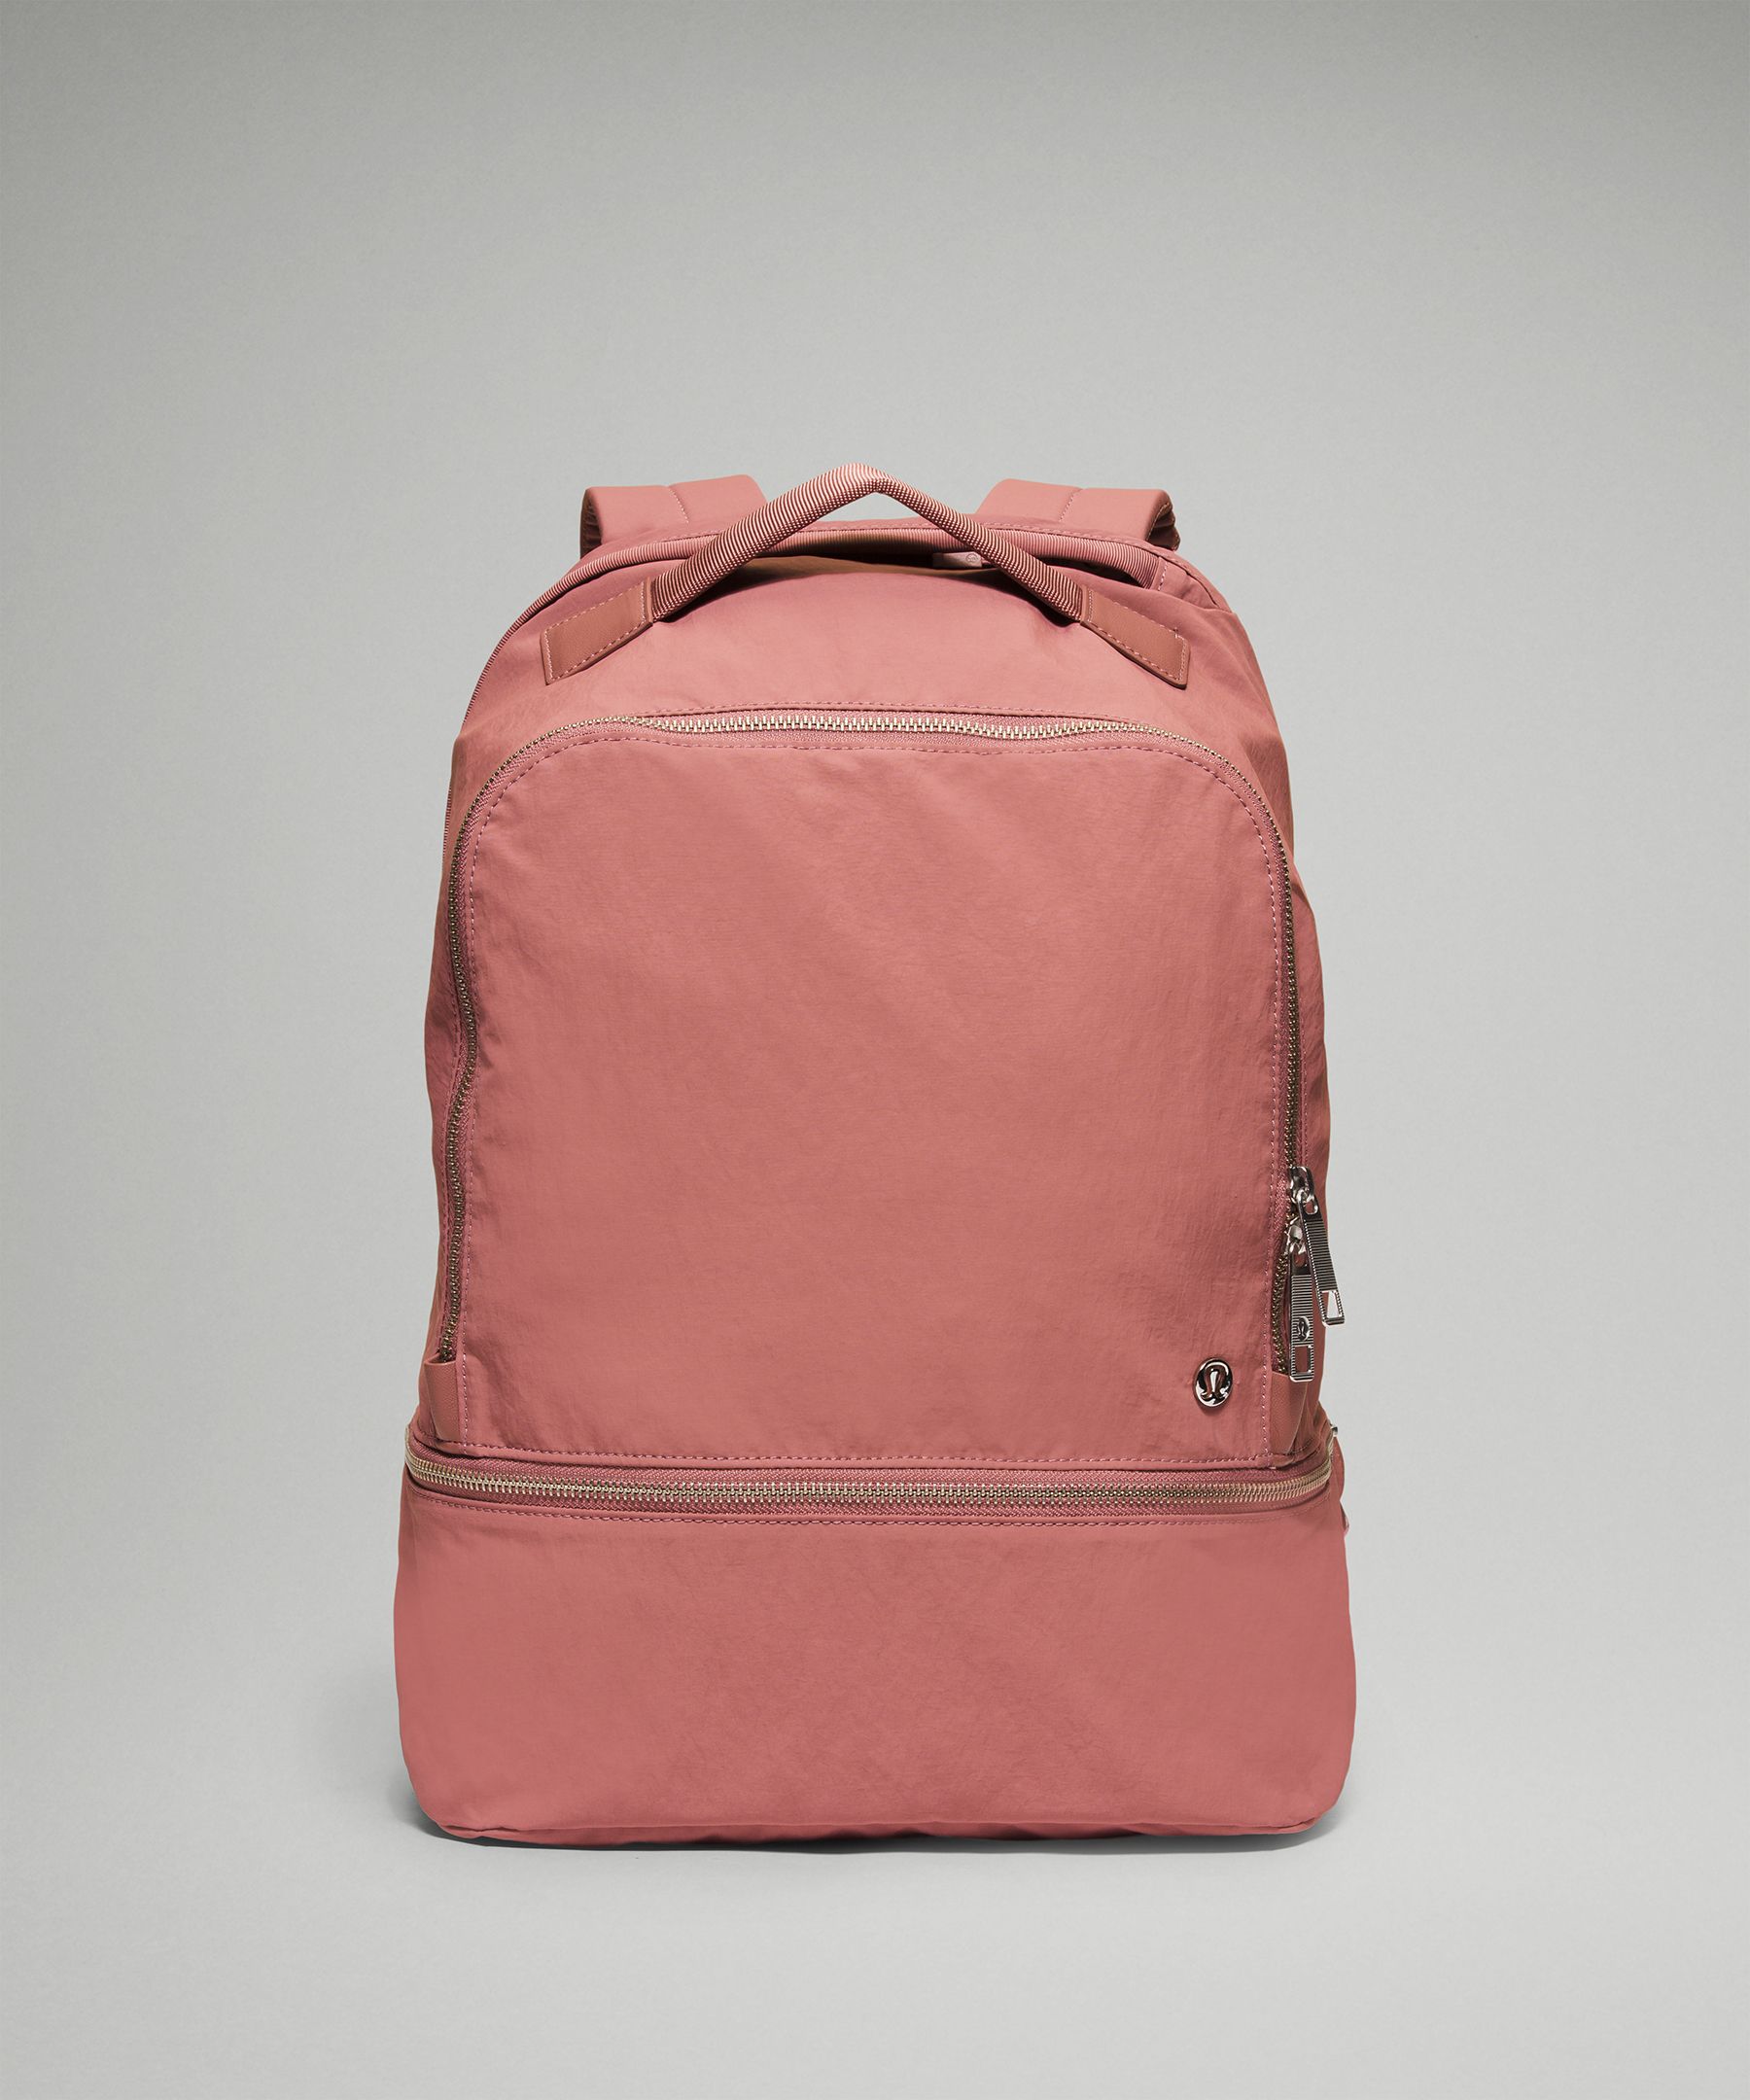 Lululemon City Adventurer Backpack 17l In Pink